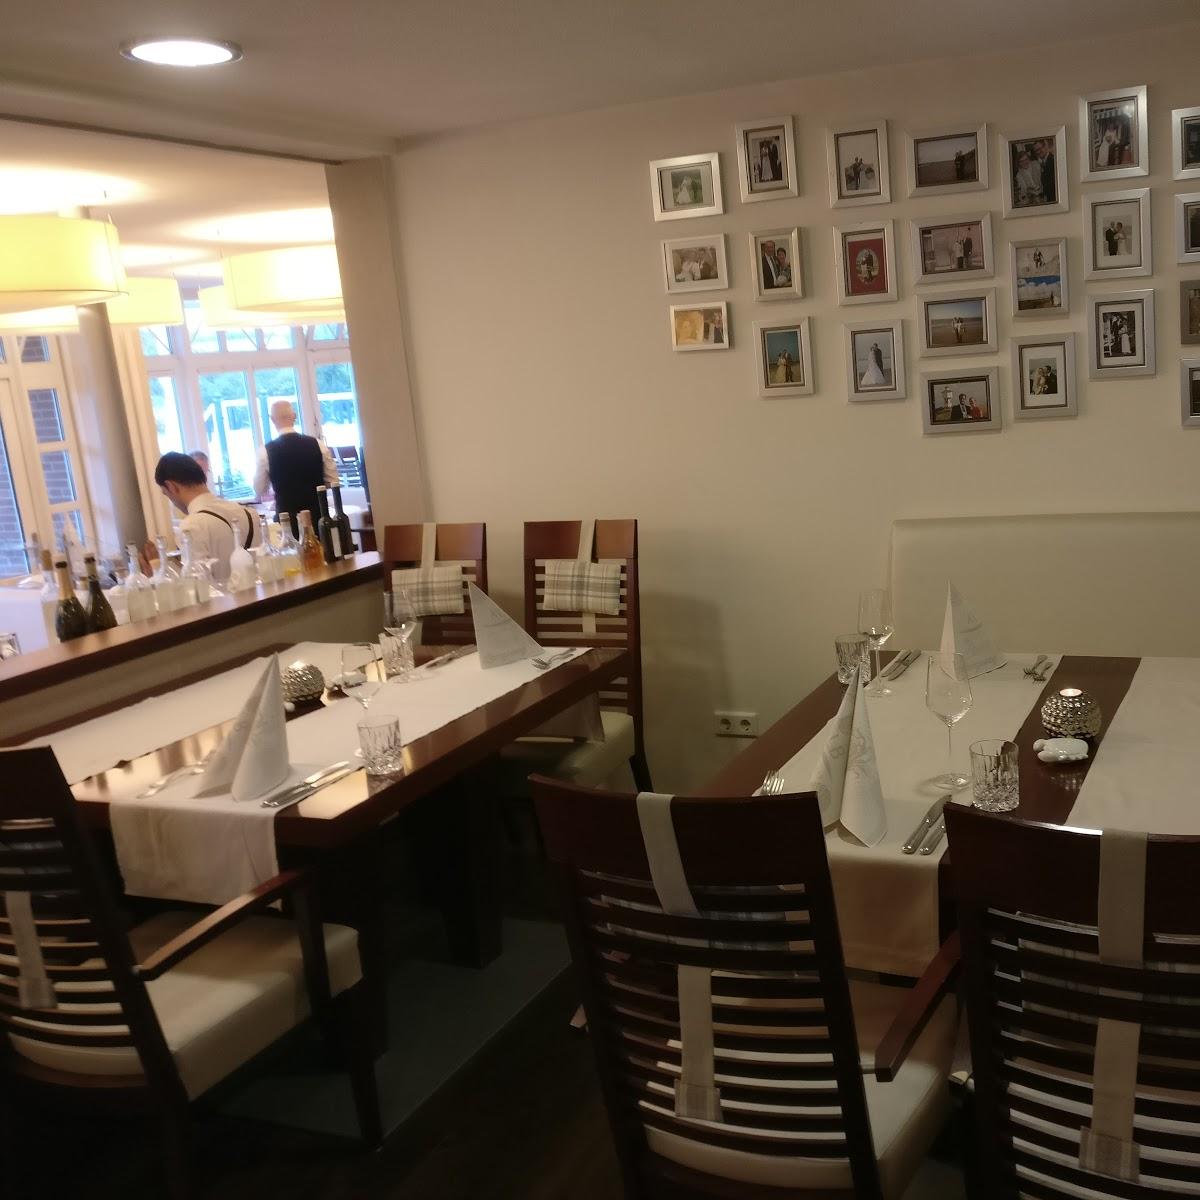 Restaurant "Restaurant Schiffchen im Hotel Kolb" in Langeoog